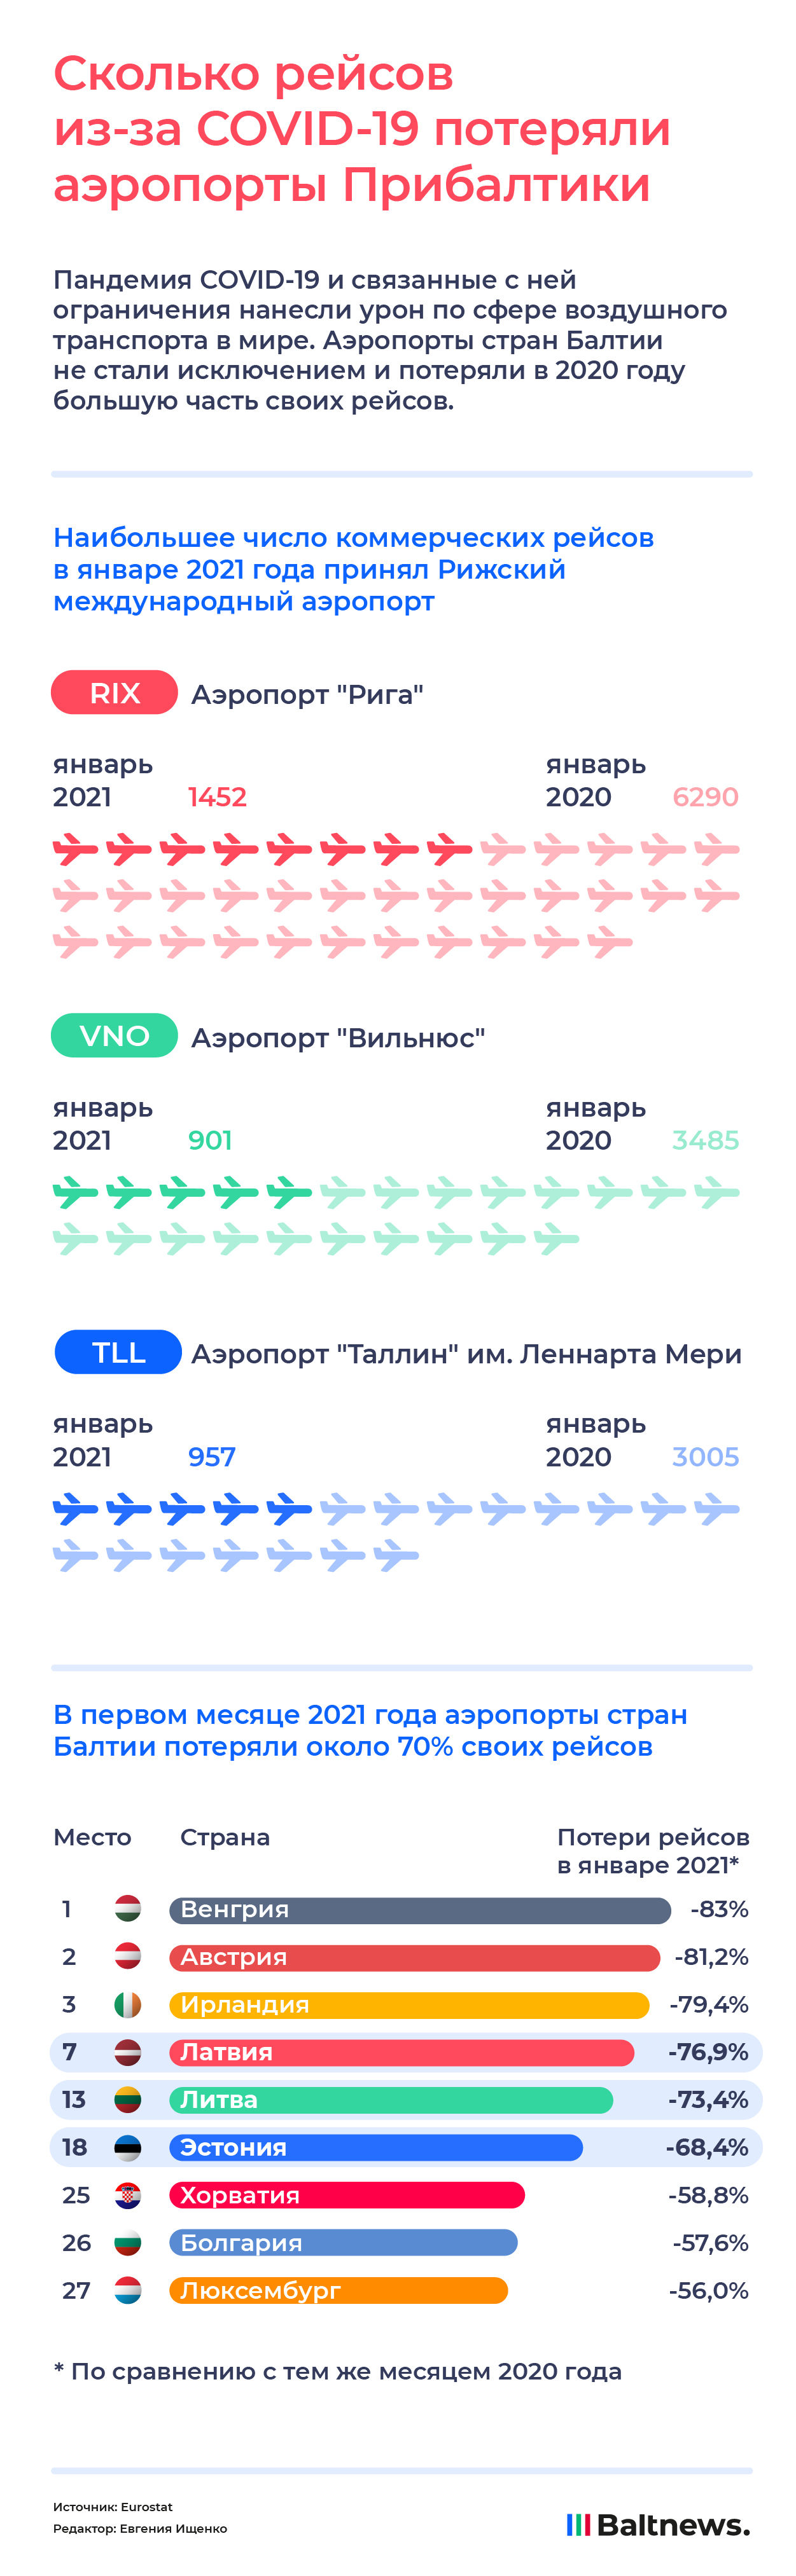 Сколько будет полета лет. Сколько самолётов потеряла Россия. Сколько рейсов работа.